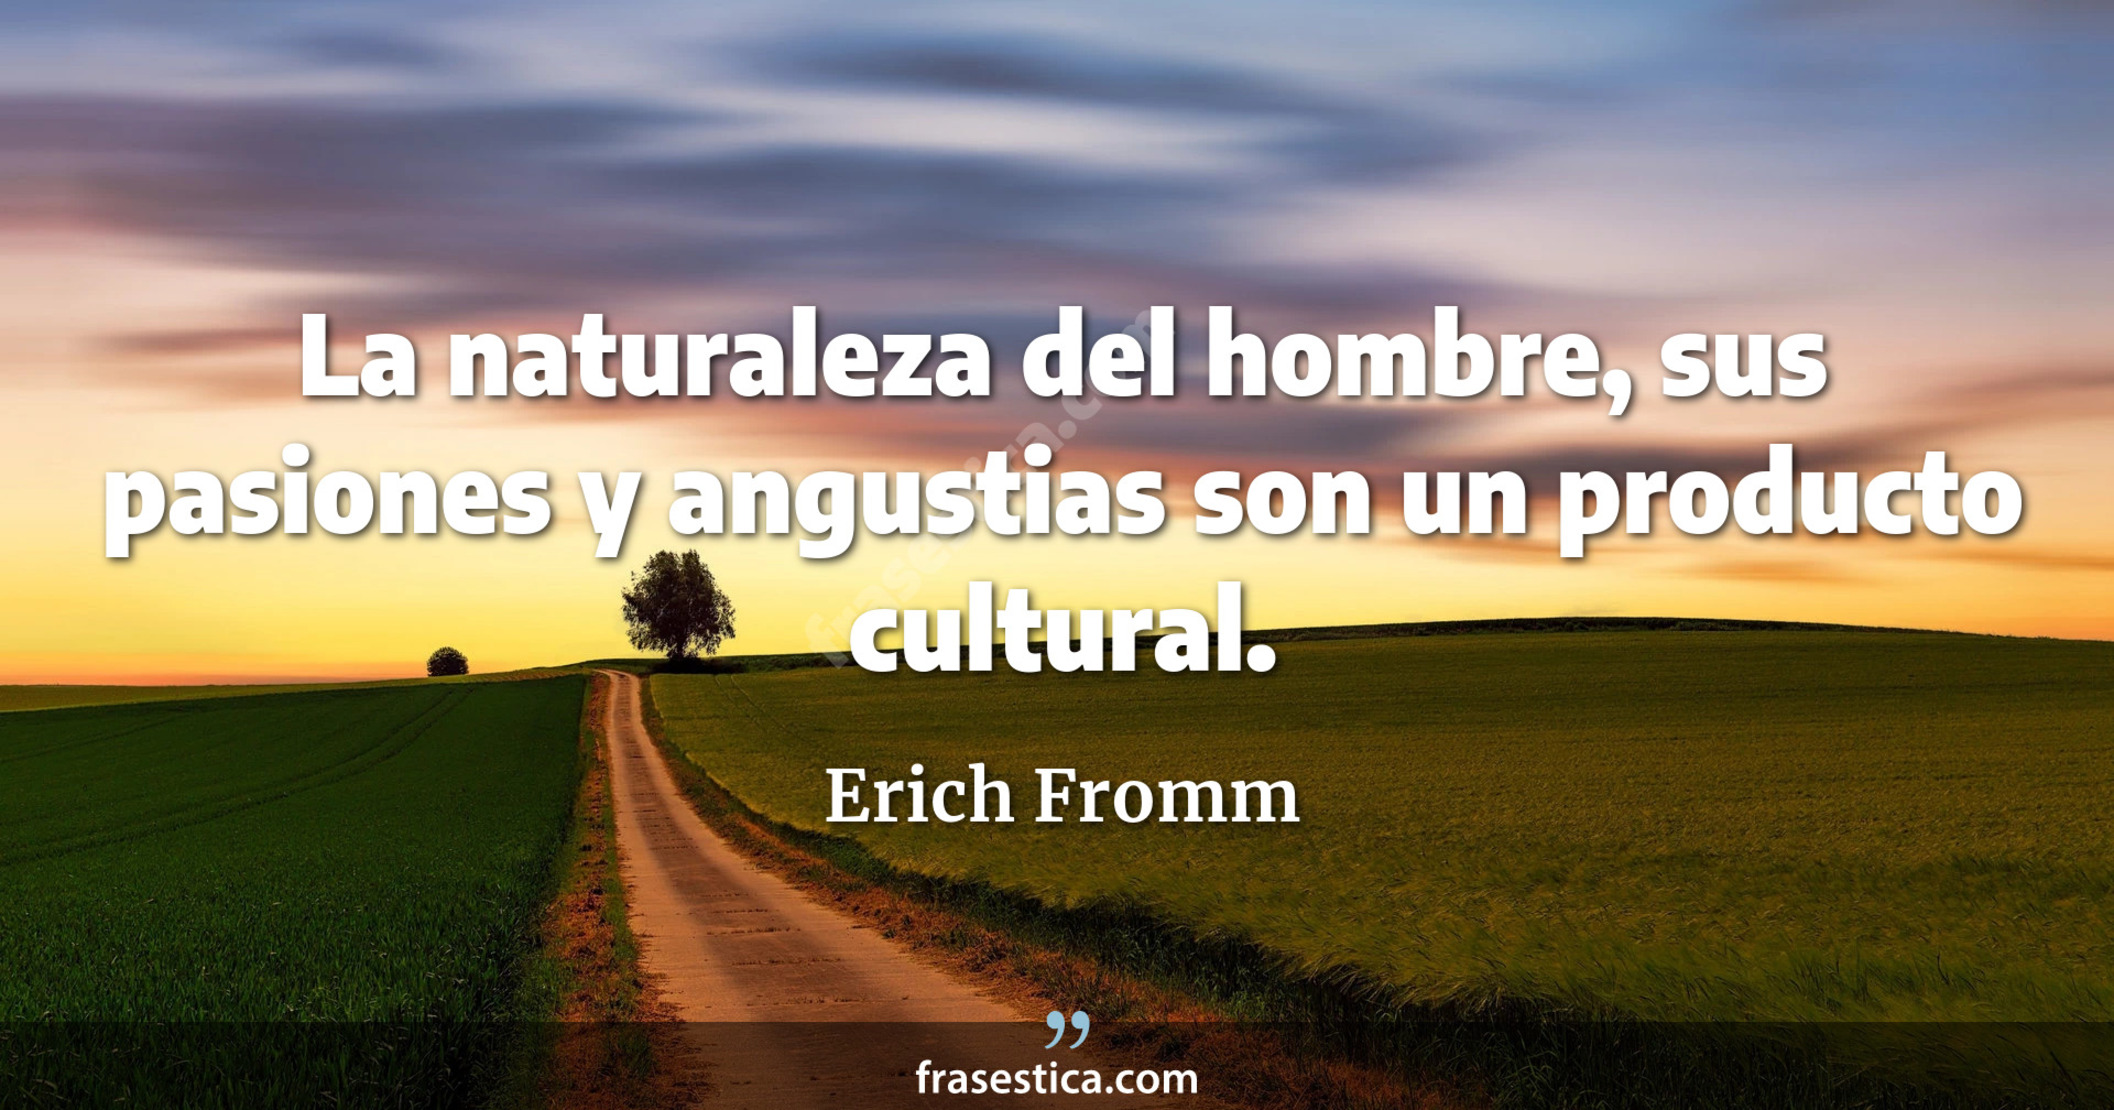 La naturaleza del hombre, sus pasiones y angustias son un producto cultural. - Erich Fromm